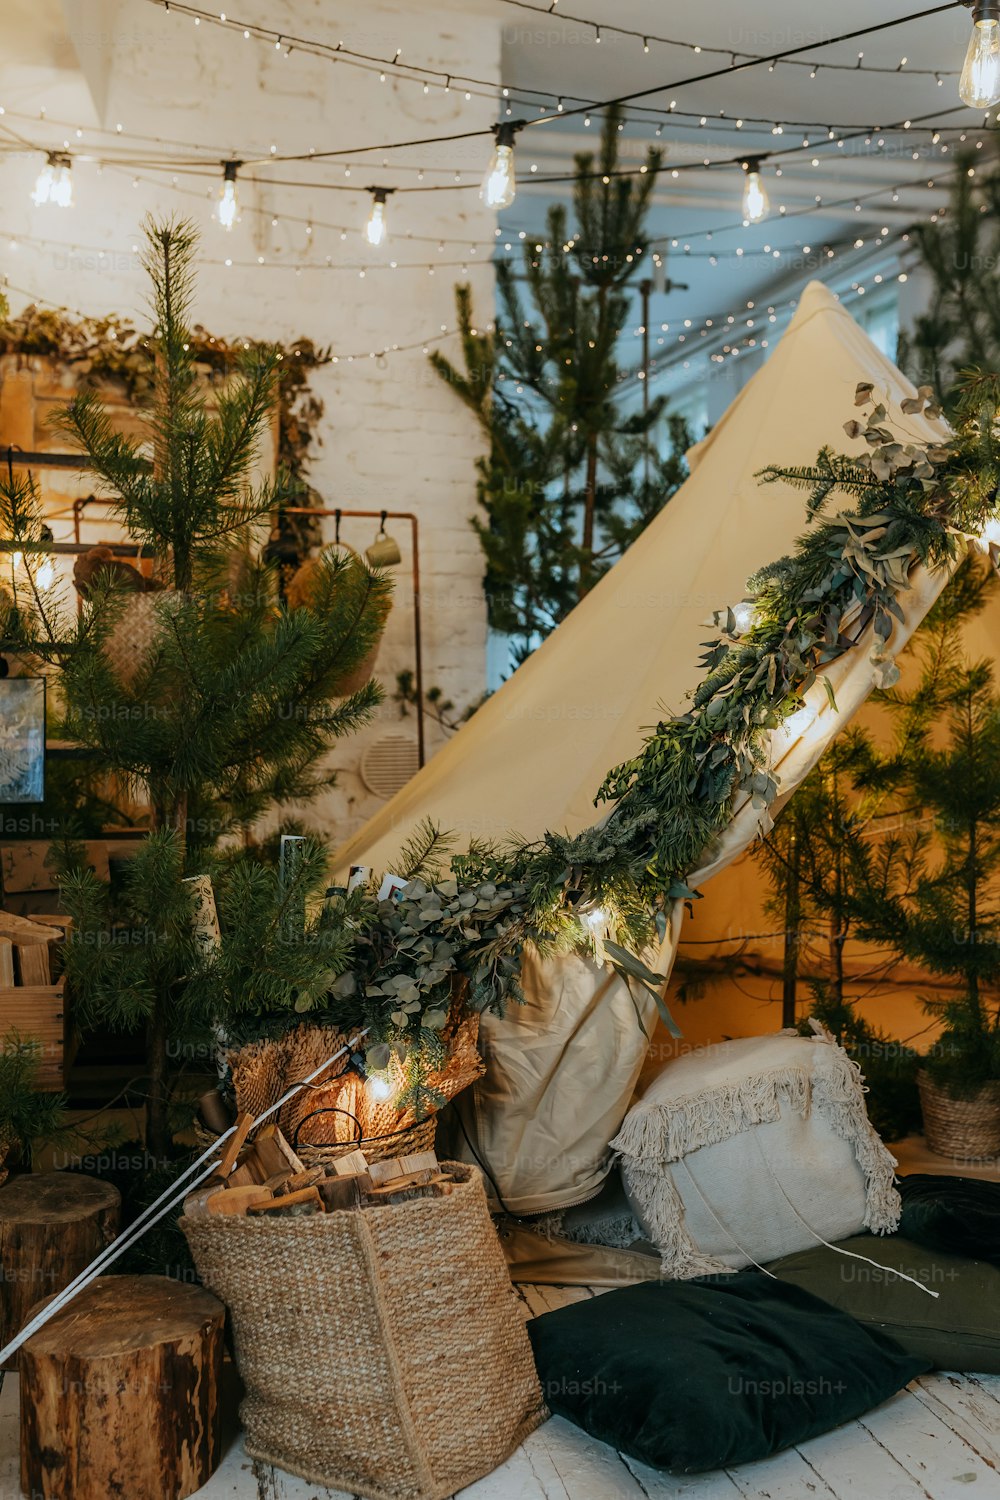 Se instala una tienda de campaña en una habitación con árboles de Navidad